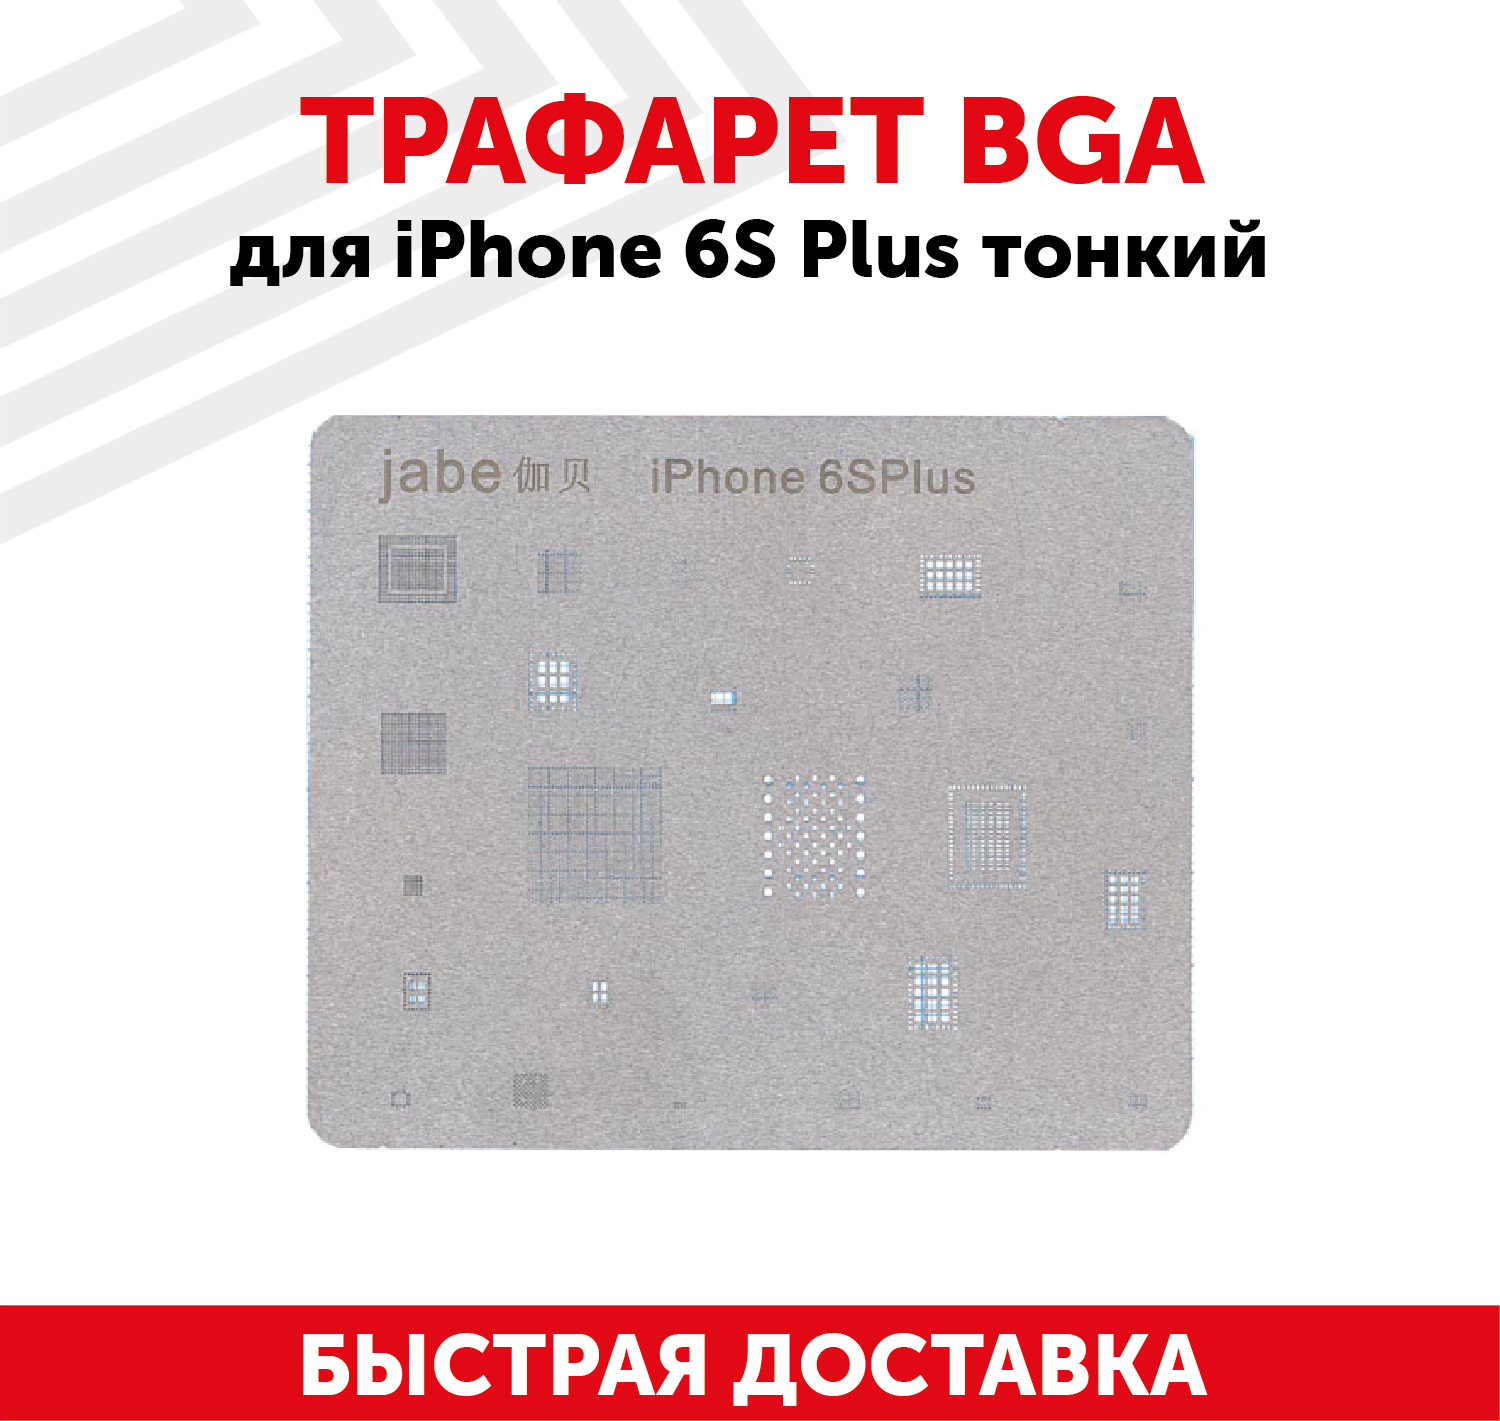 Трафарет BGA для мобильного телефона (смартфона) Apple iPhone 6S Plus тонкий